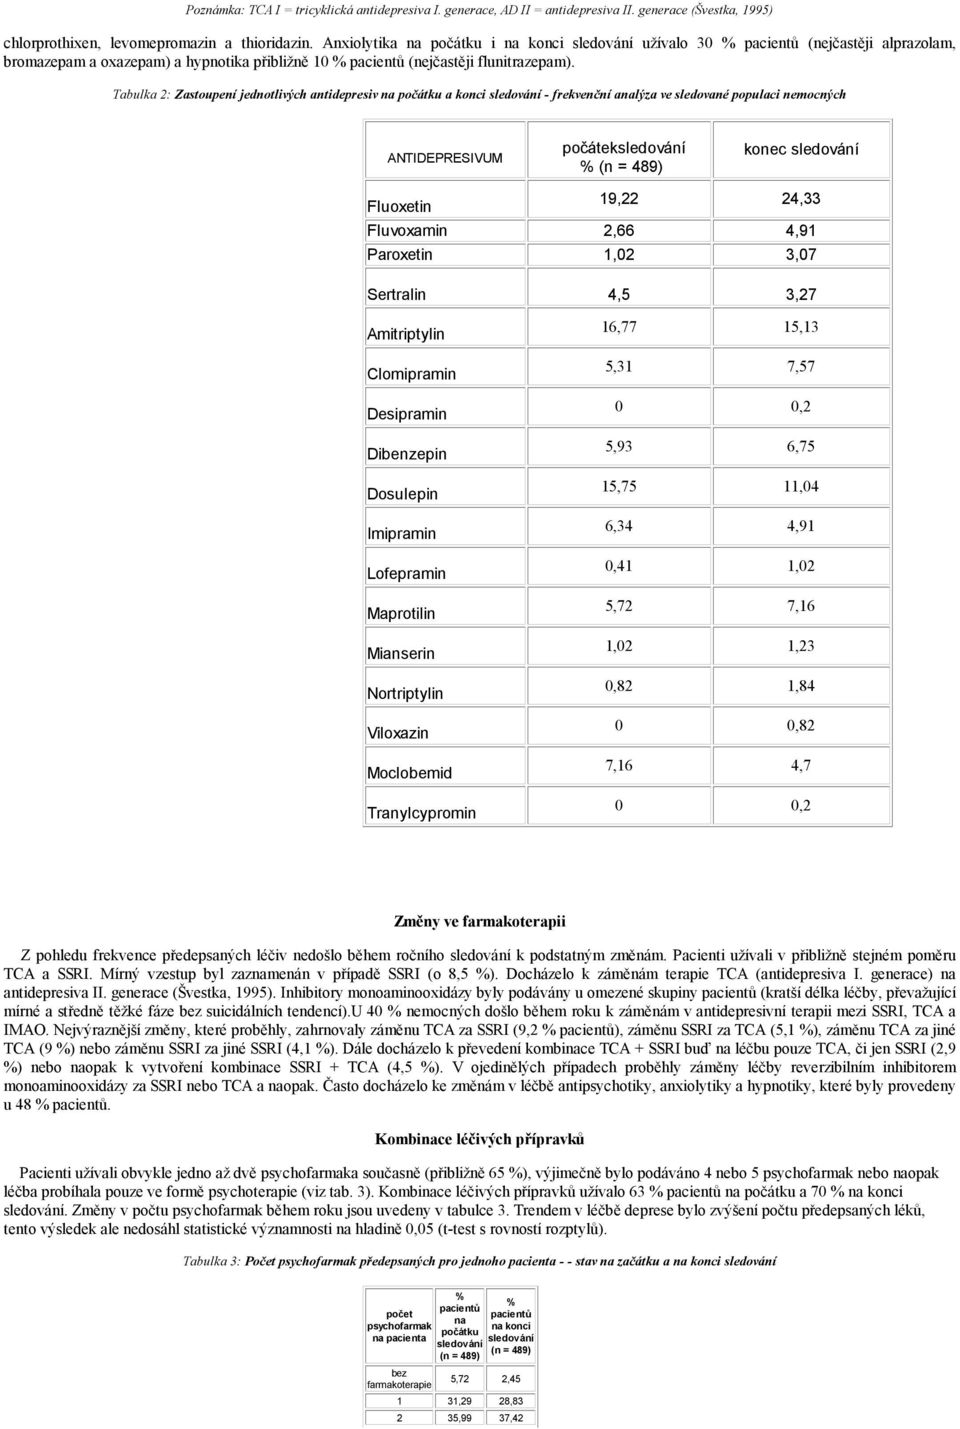 Tabulka 2: Zastoupení jednotlivých antidepresiv na počátku a konci sledování - frekvenční analýza ve sledované populaci nemocných ANTIDEPRESIVUM počáteksledování % 489) konec sledování Fluoxetin